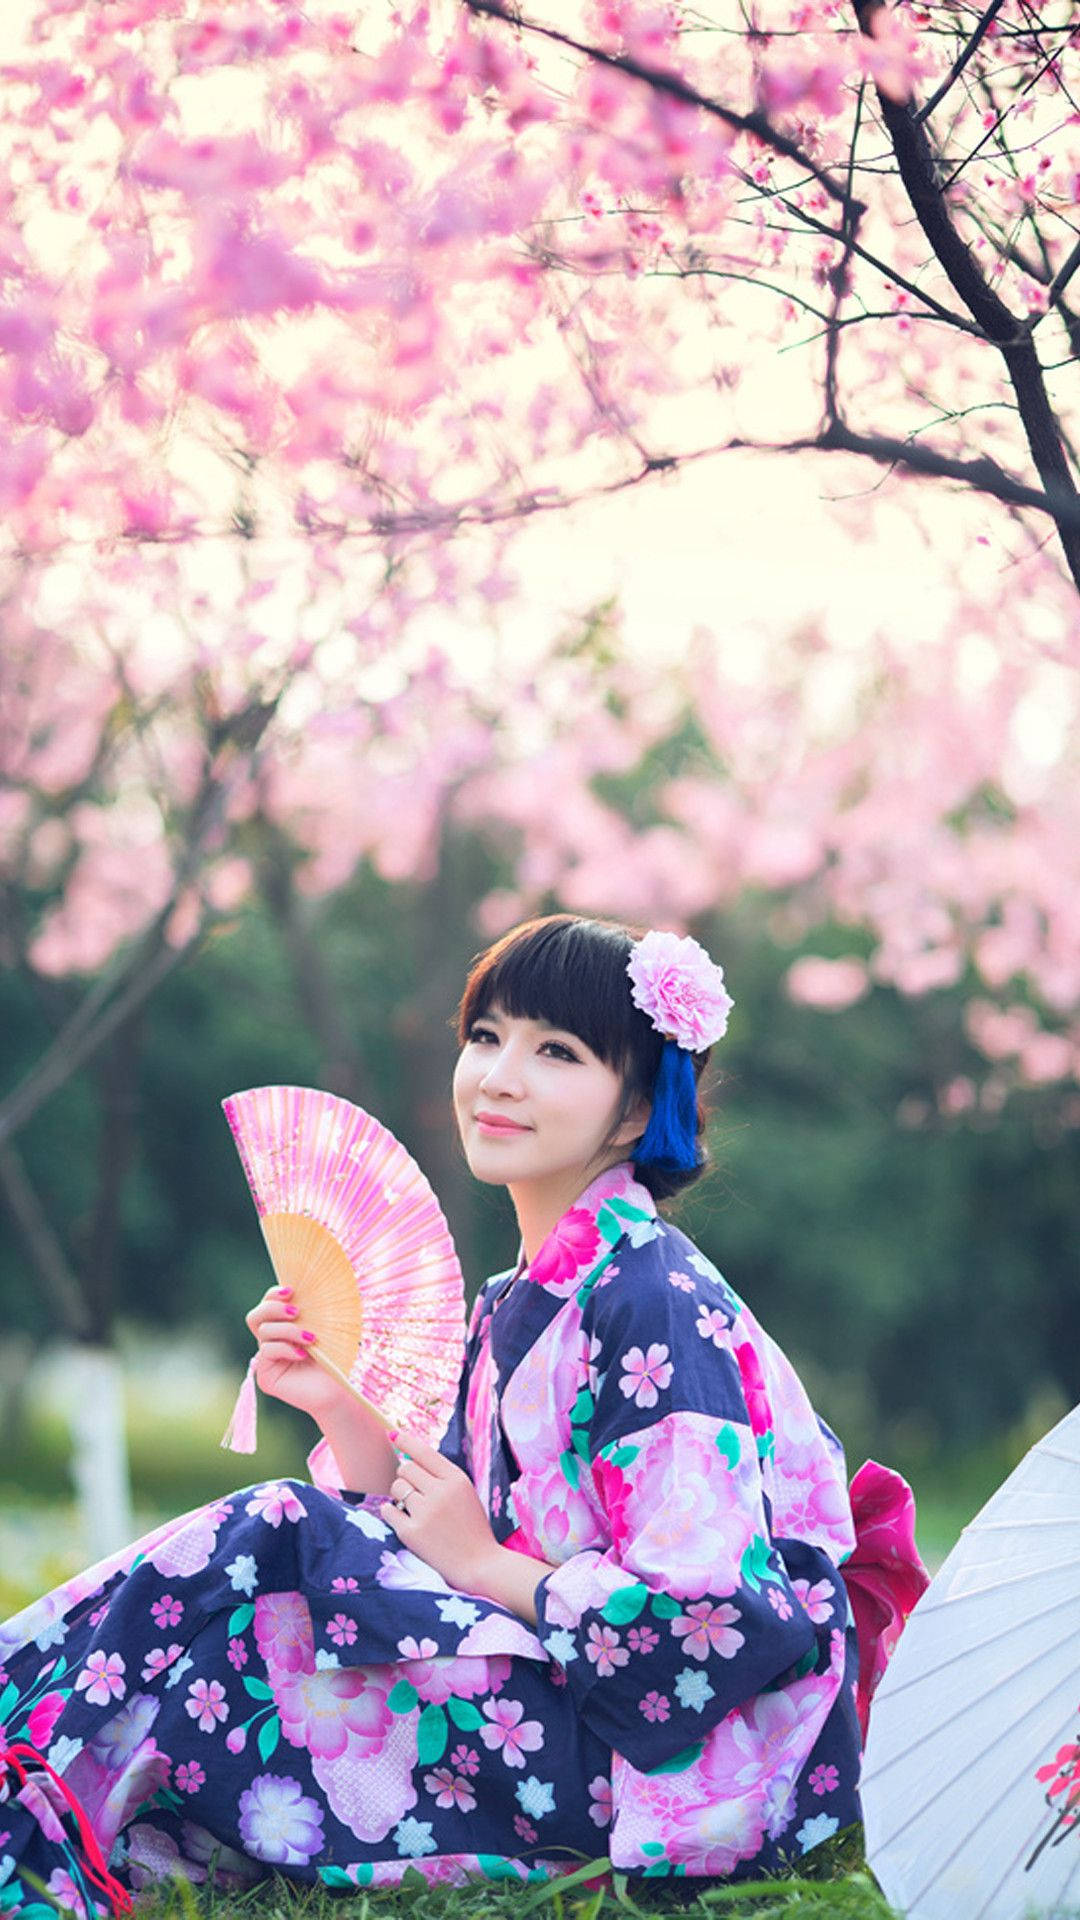 Japan Girl Floral Yukata Sakura Tree Background